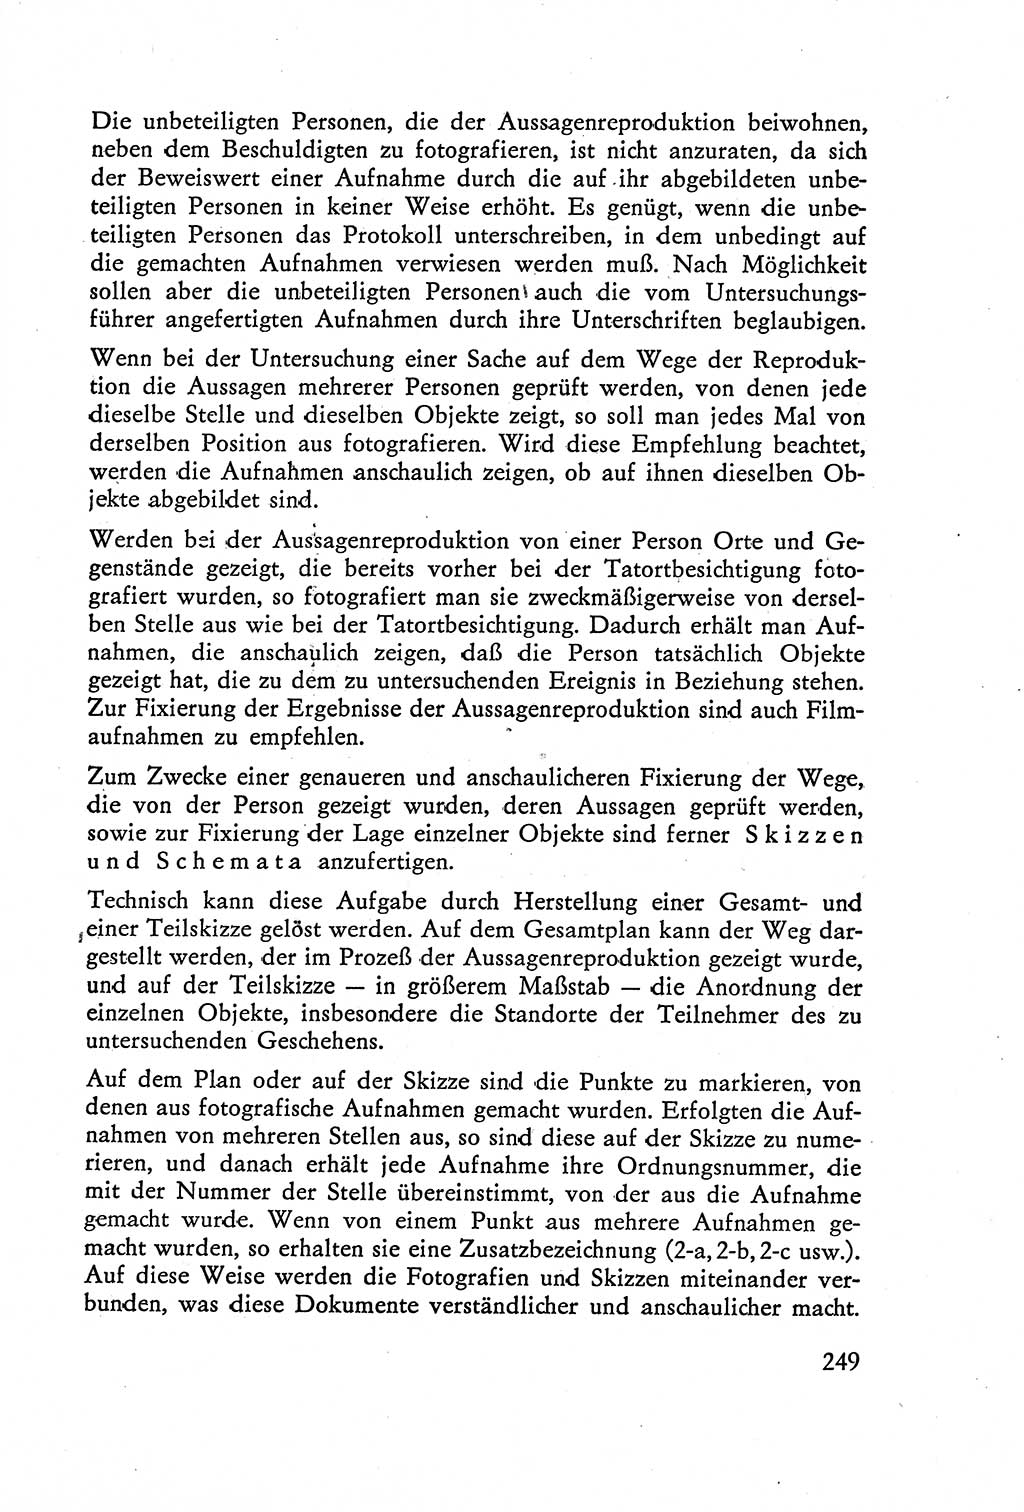 Die Vernehmung [Deutsche Demokratische Republik (DDR)] 1960, Seite 249 (Vern. DDR 1960, S. 249)